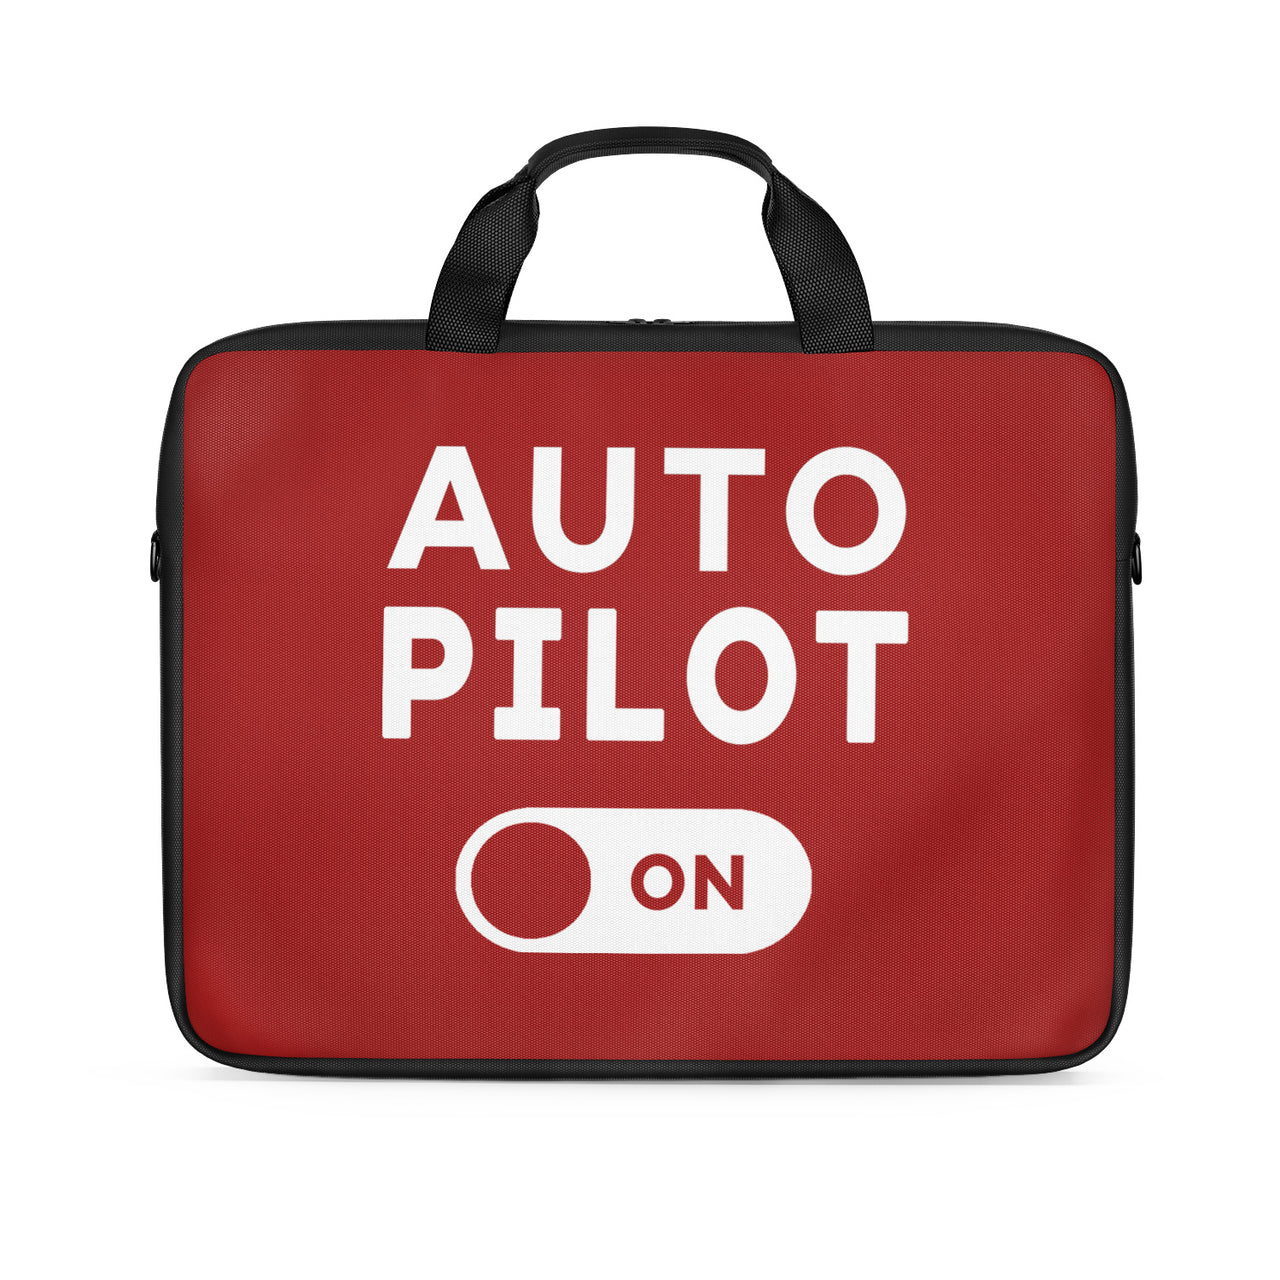 Auto Pilot ON Designed Laptop & Tablet Bags